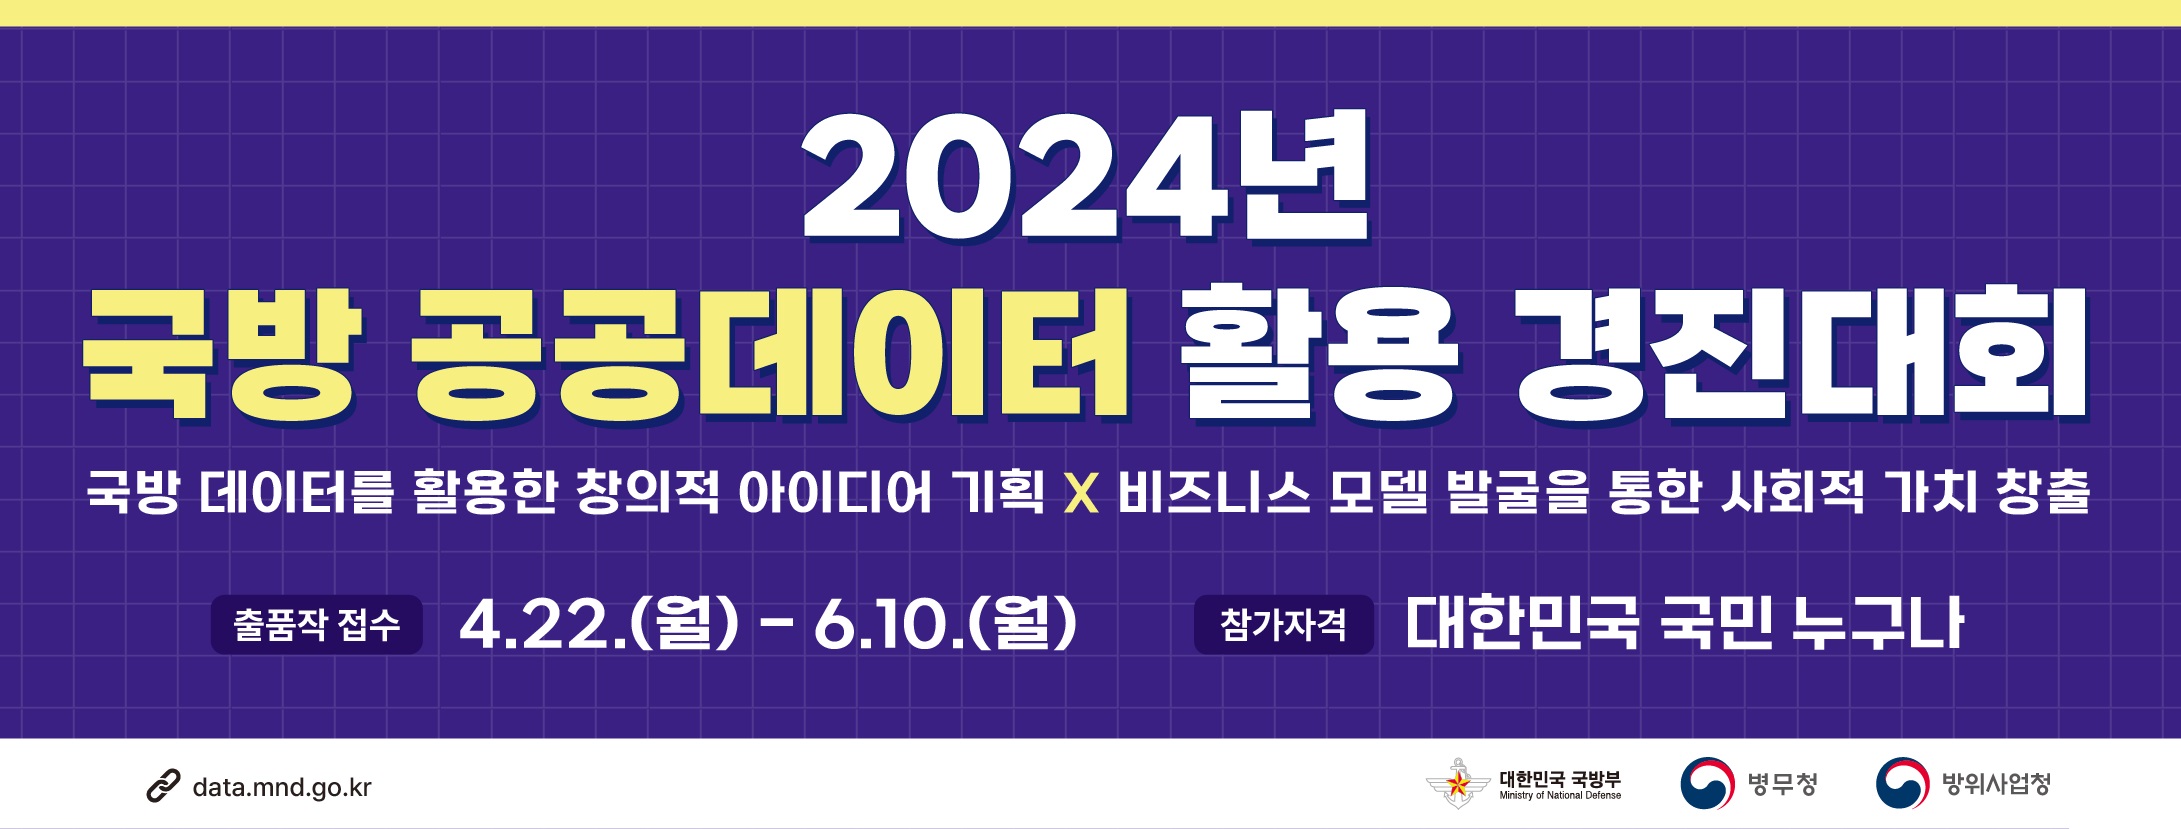 2024년 공공데이터 활용 경진대회 개최